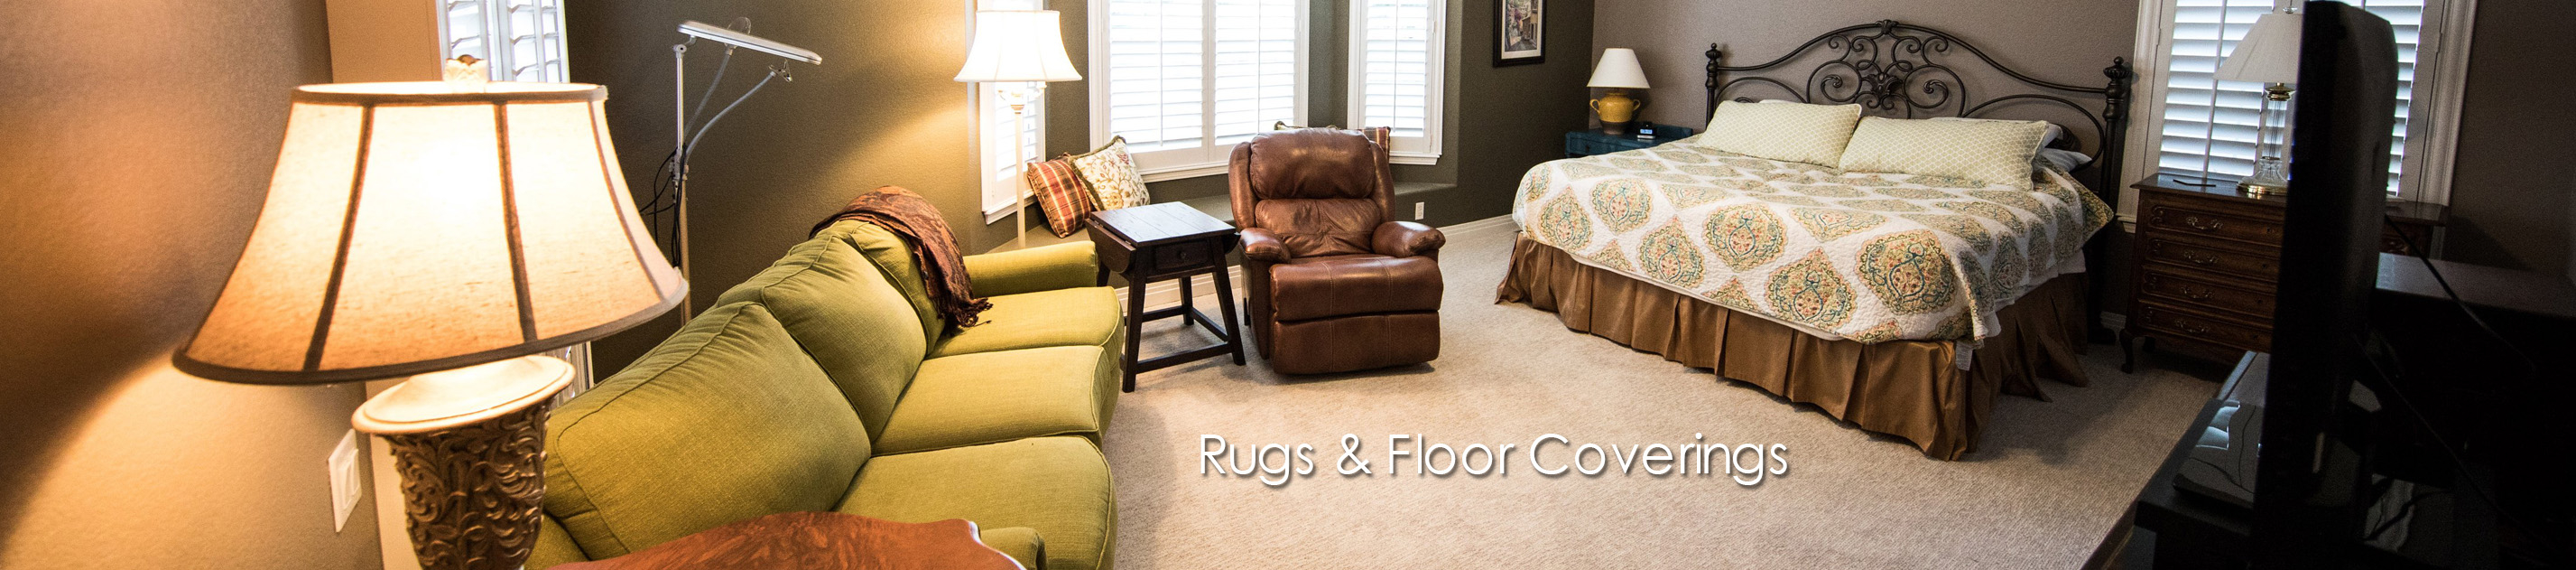 Rugs & Floor Coverings